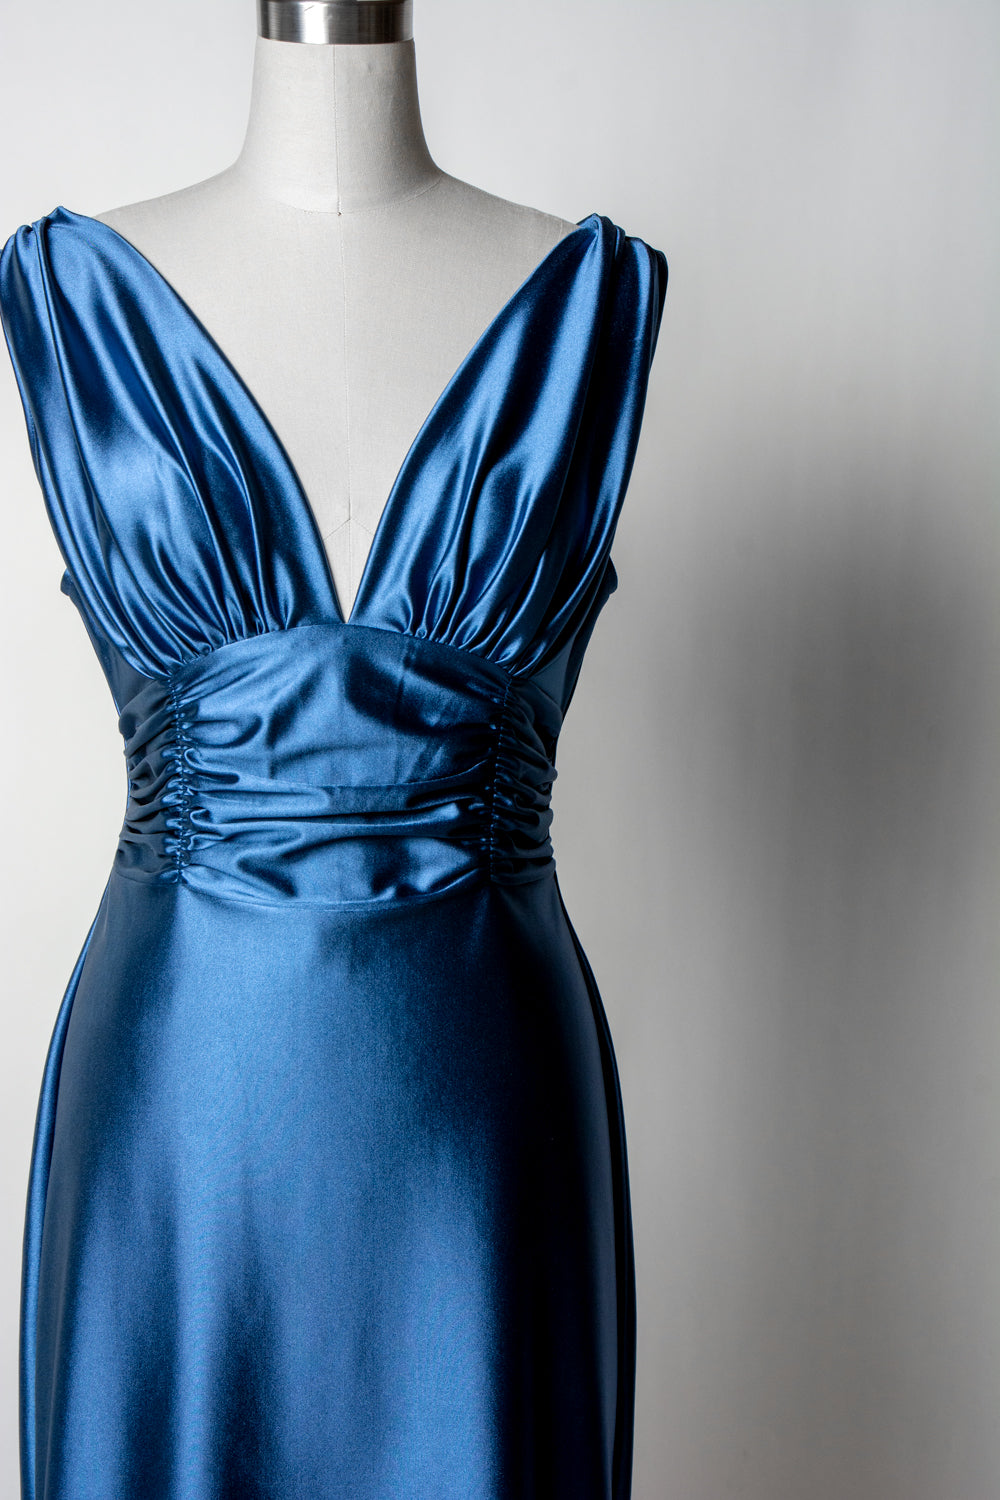 Formal Athena Gown Dress - Stretch Satin, Denim Blue